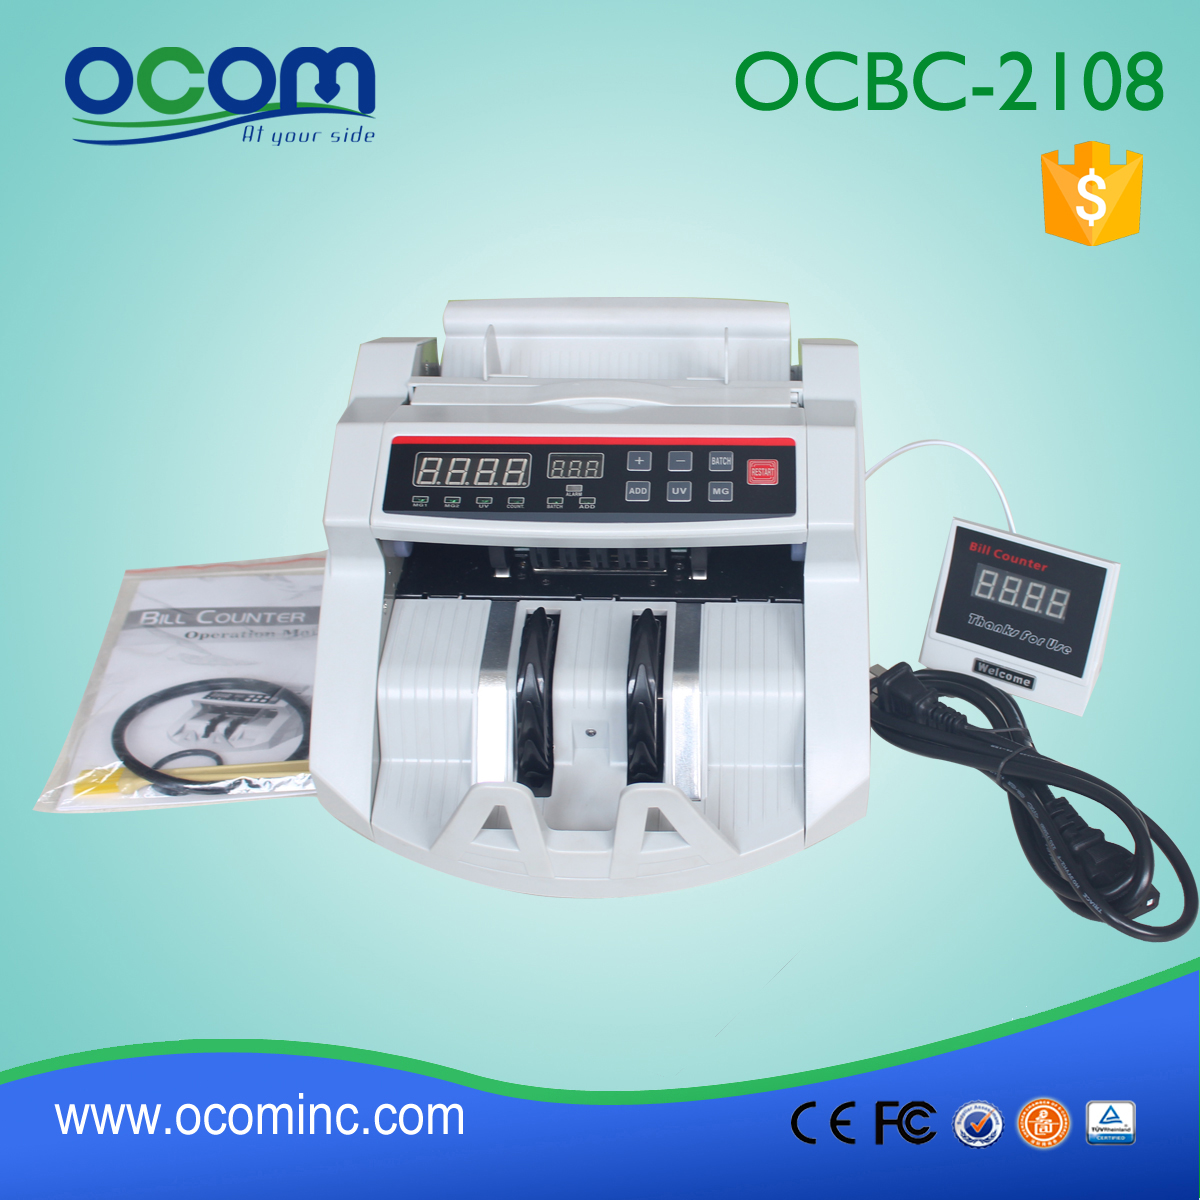 OCBC-2108 billiges Geld Zähler in China